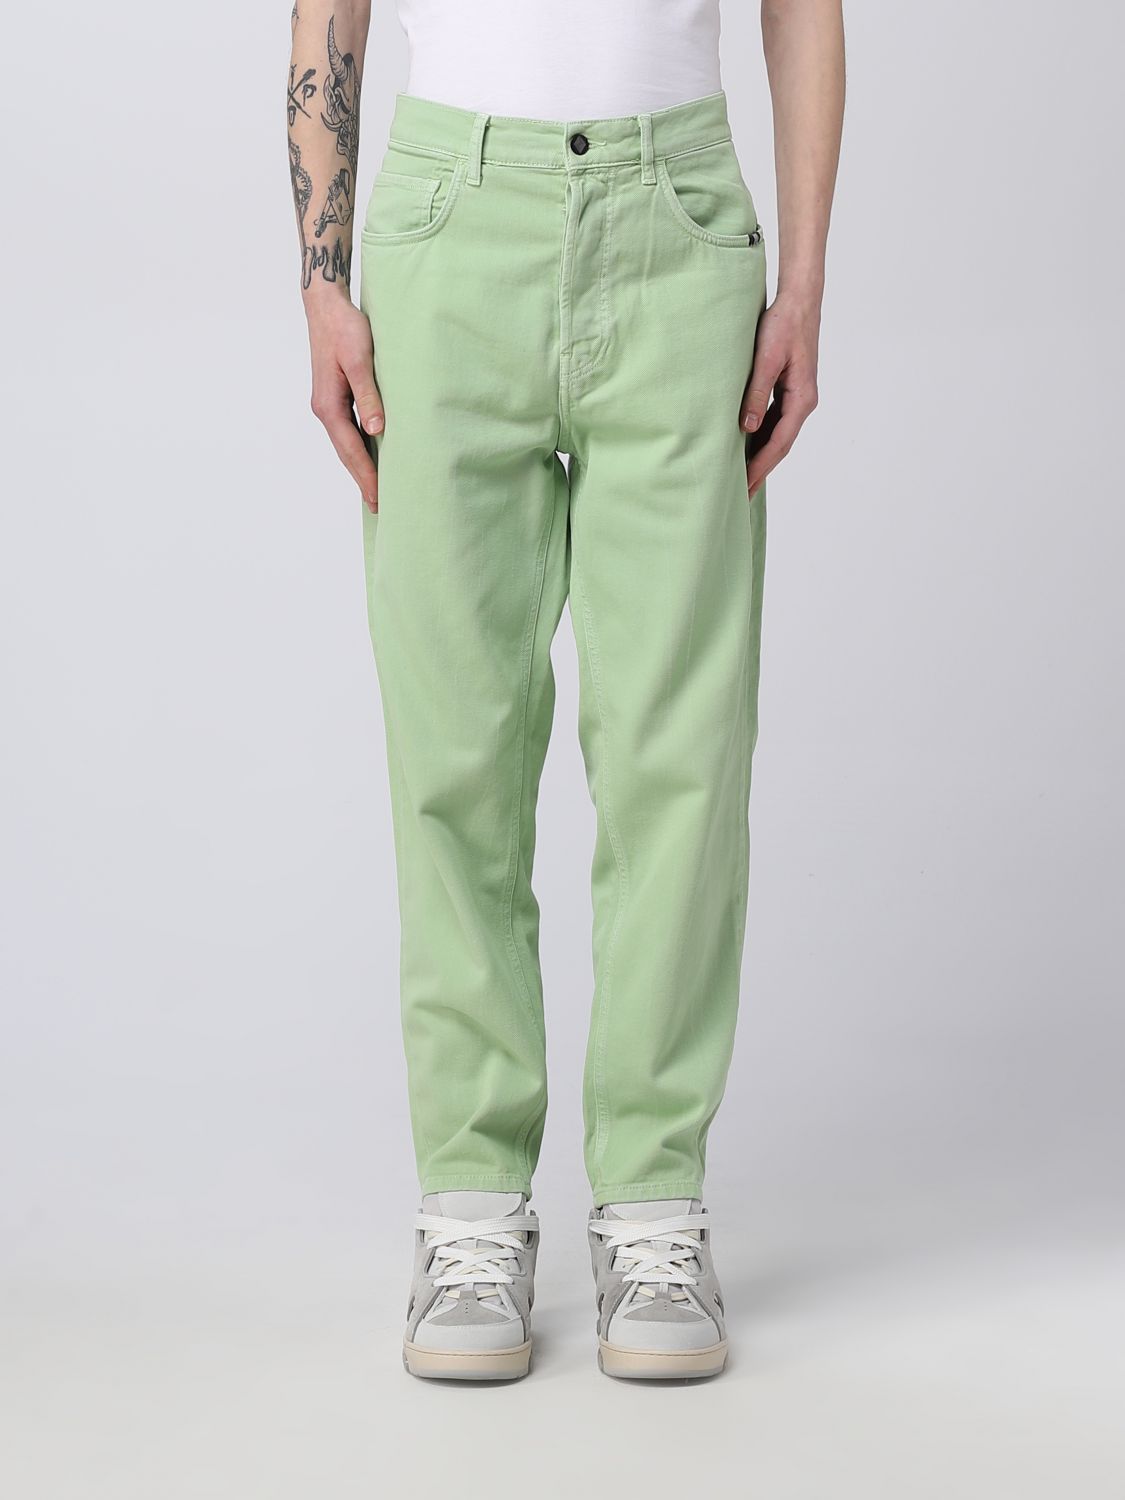 jeans amish men colour green